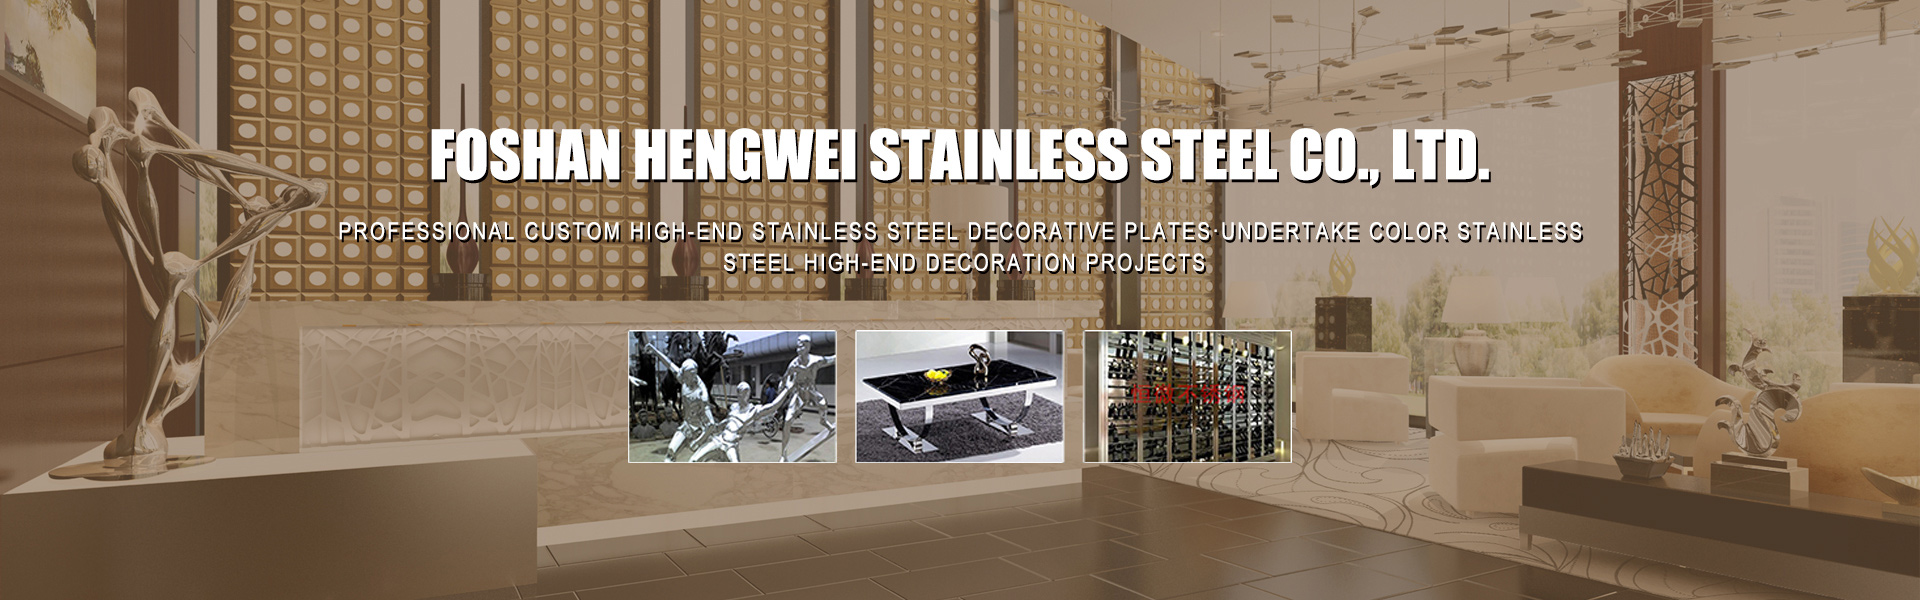 Fatshan hw stainless steel Co., Ltd